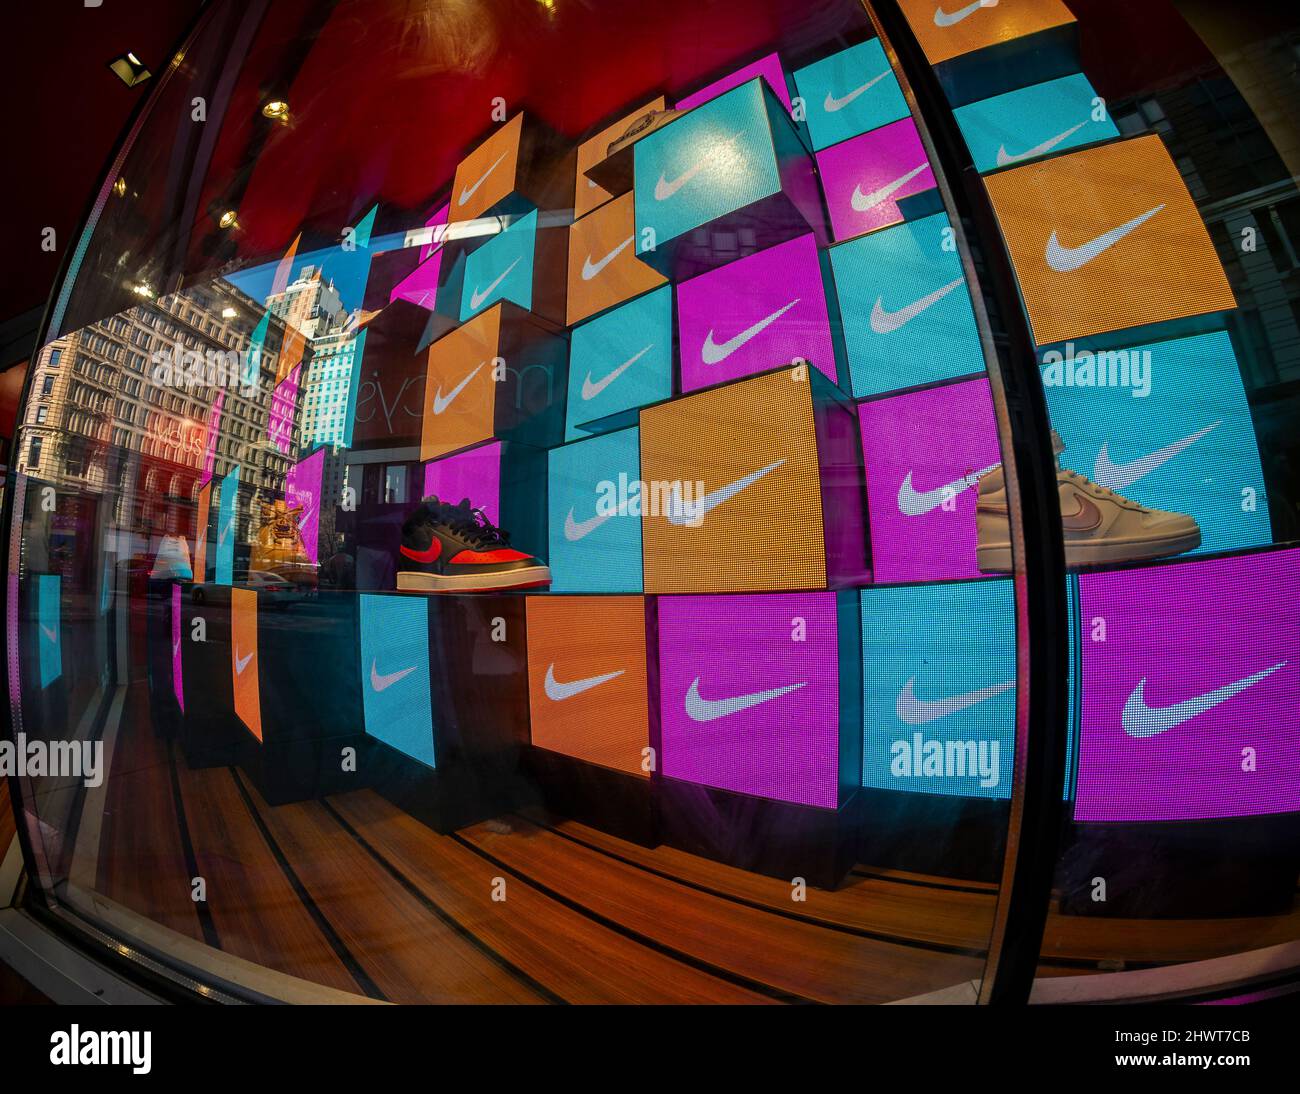 Una ventana para Nike en una famosa tienda de calzado en Herald Square en Nueva York el miércoles 2 de marzo de 2022. Nike ha estado llevando la distribución a